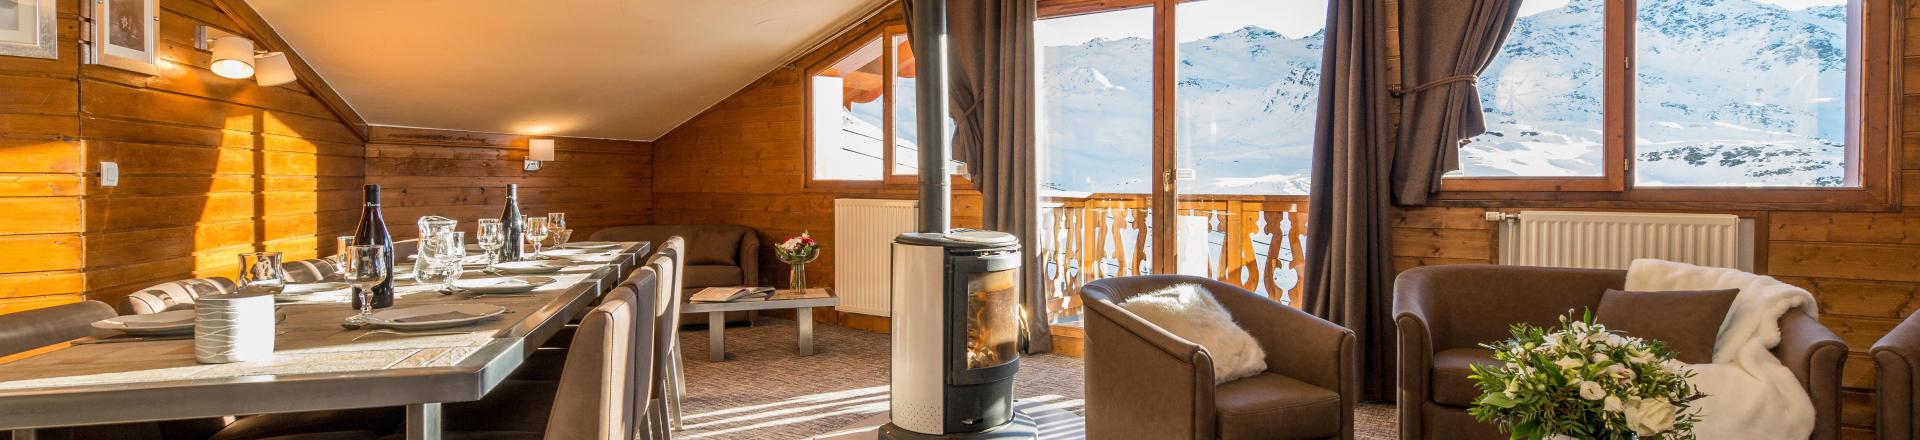 Location au ski Appartement 6 pièces 10-12 personnes (Grand Confort) - Chalet Val 2400 - Val Thorens